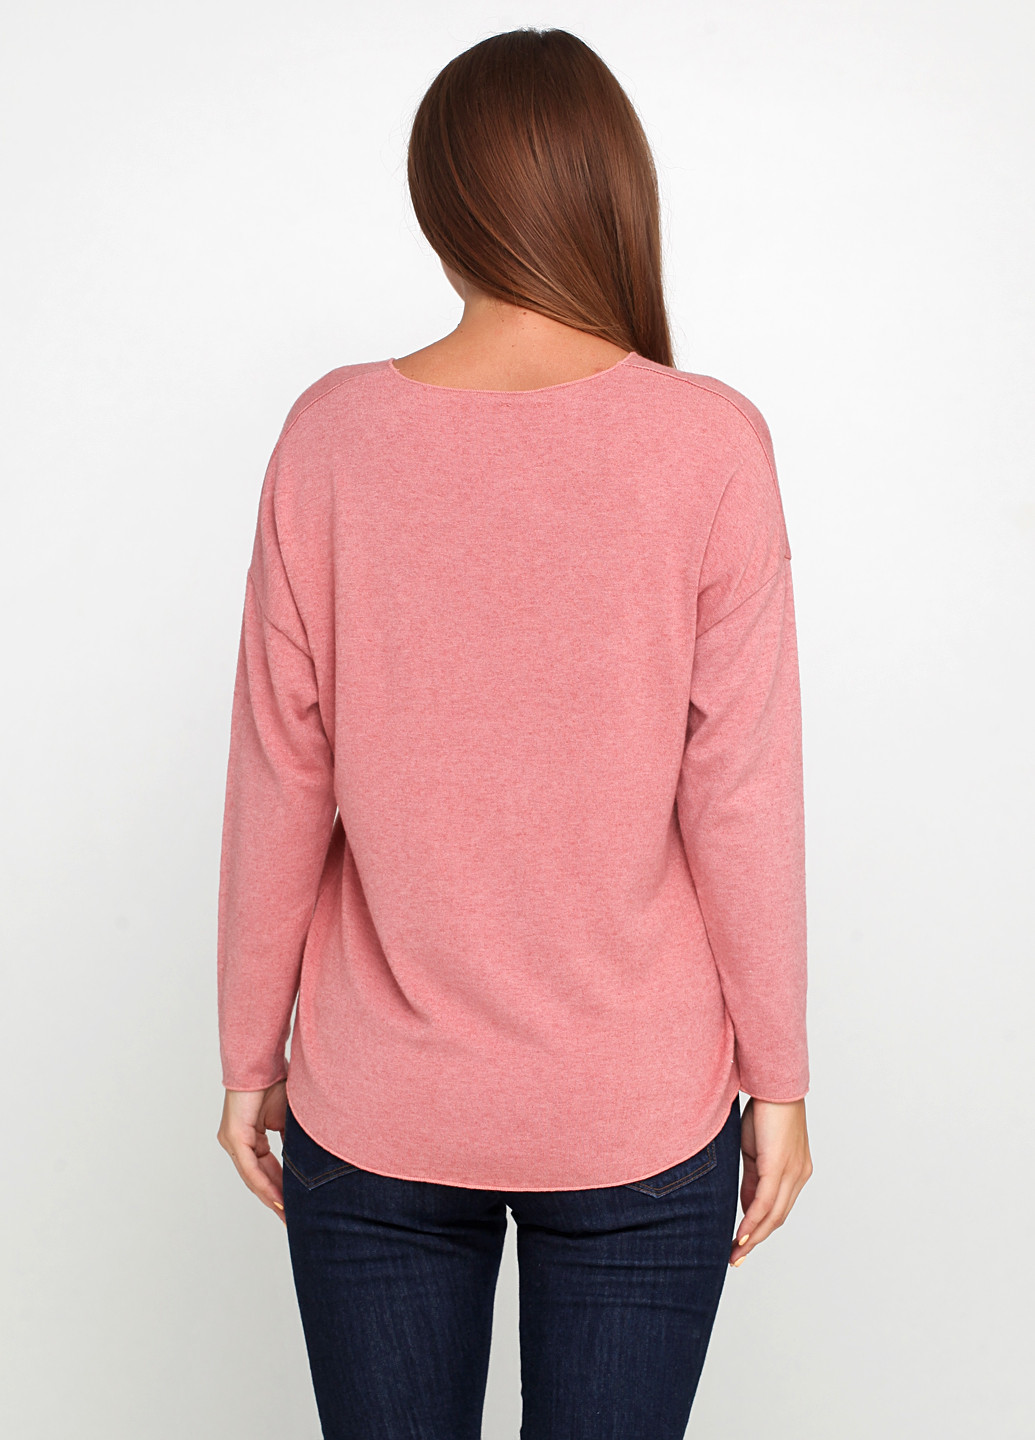 Персиковый демисезонный пуловер пуловер Elena